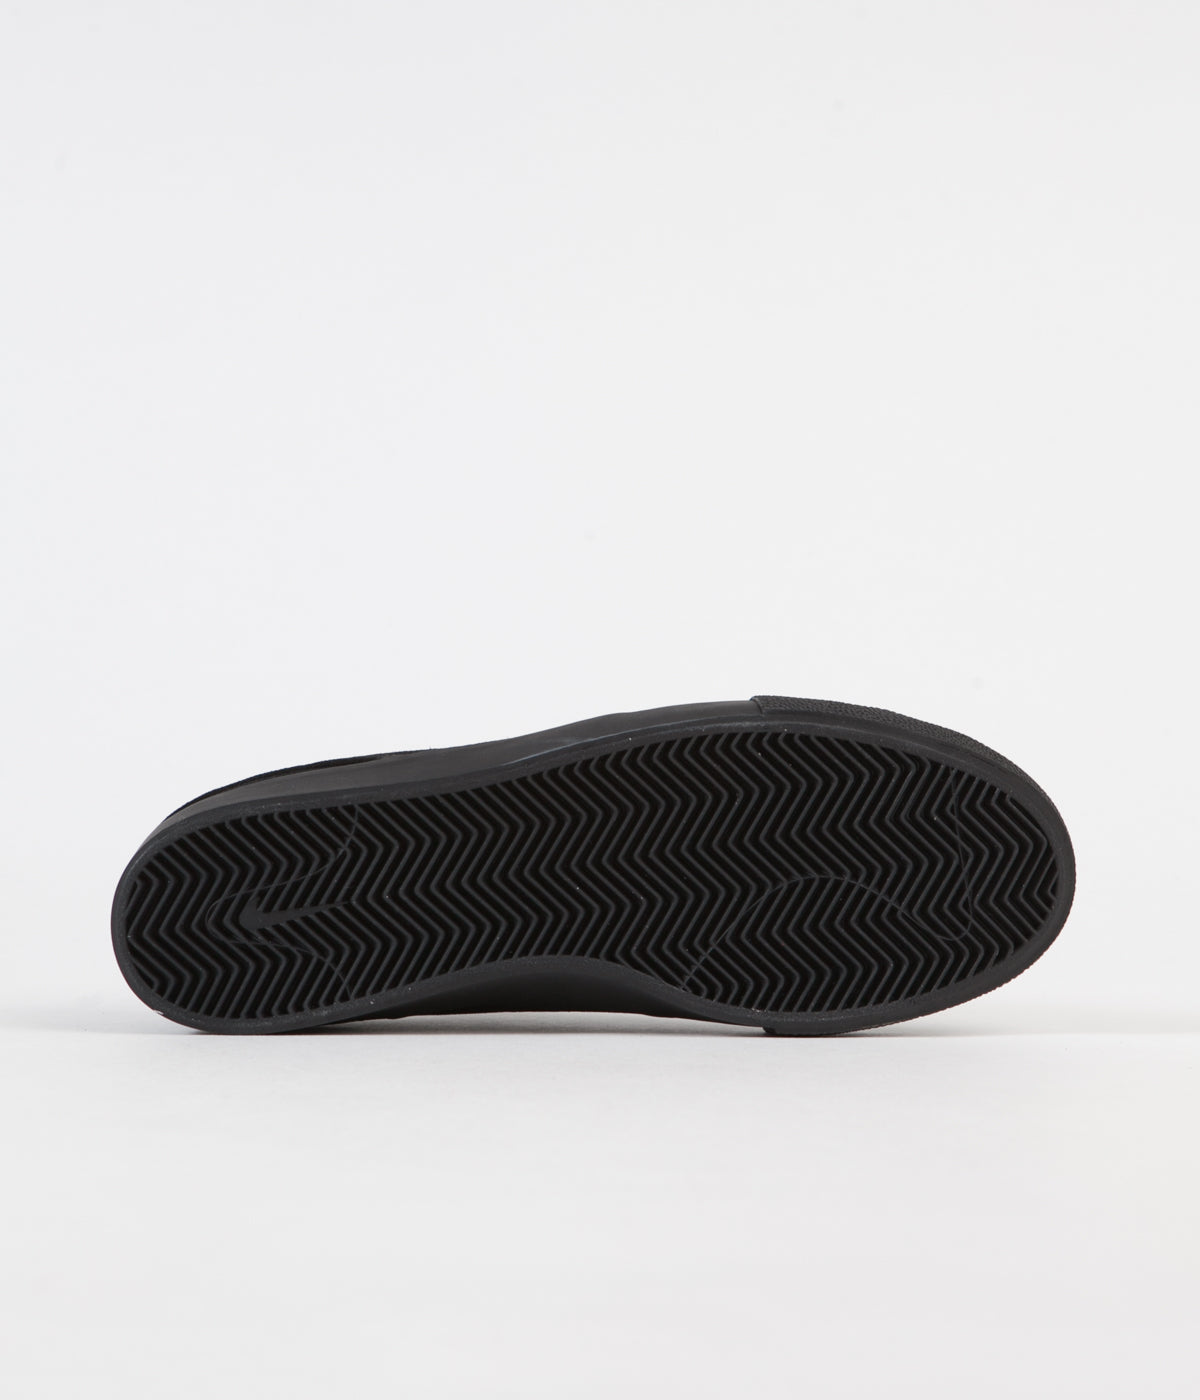 Nike Janoski Shoes - Black / Black - Black - | Flatspot